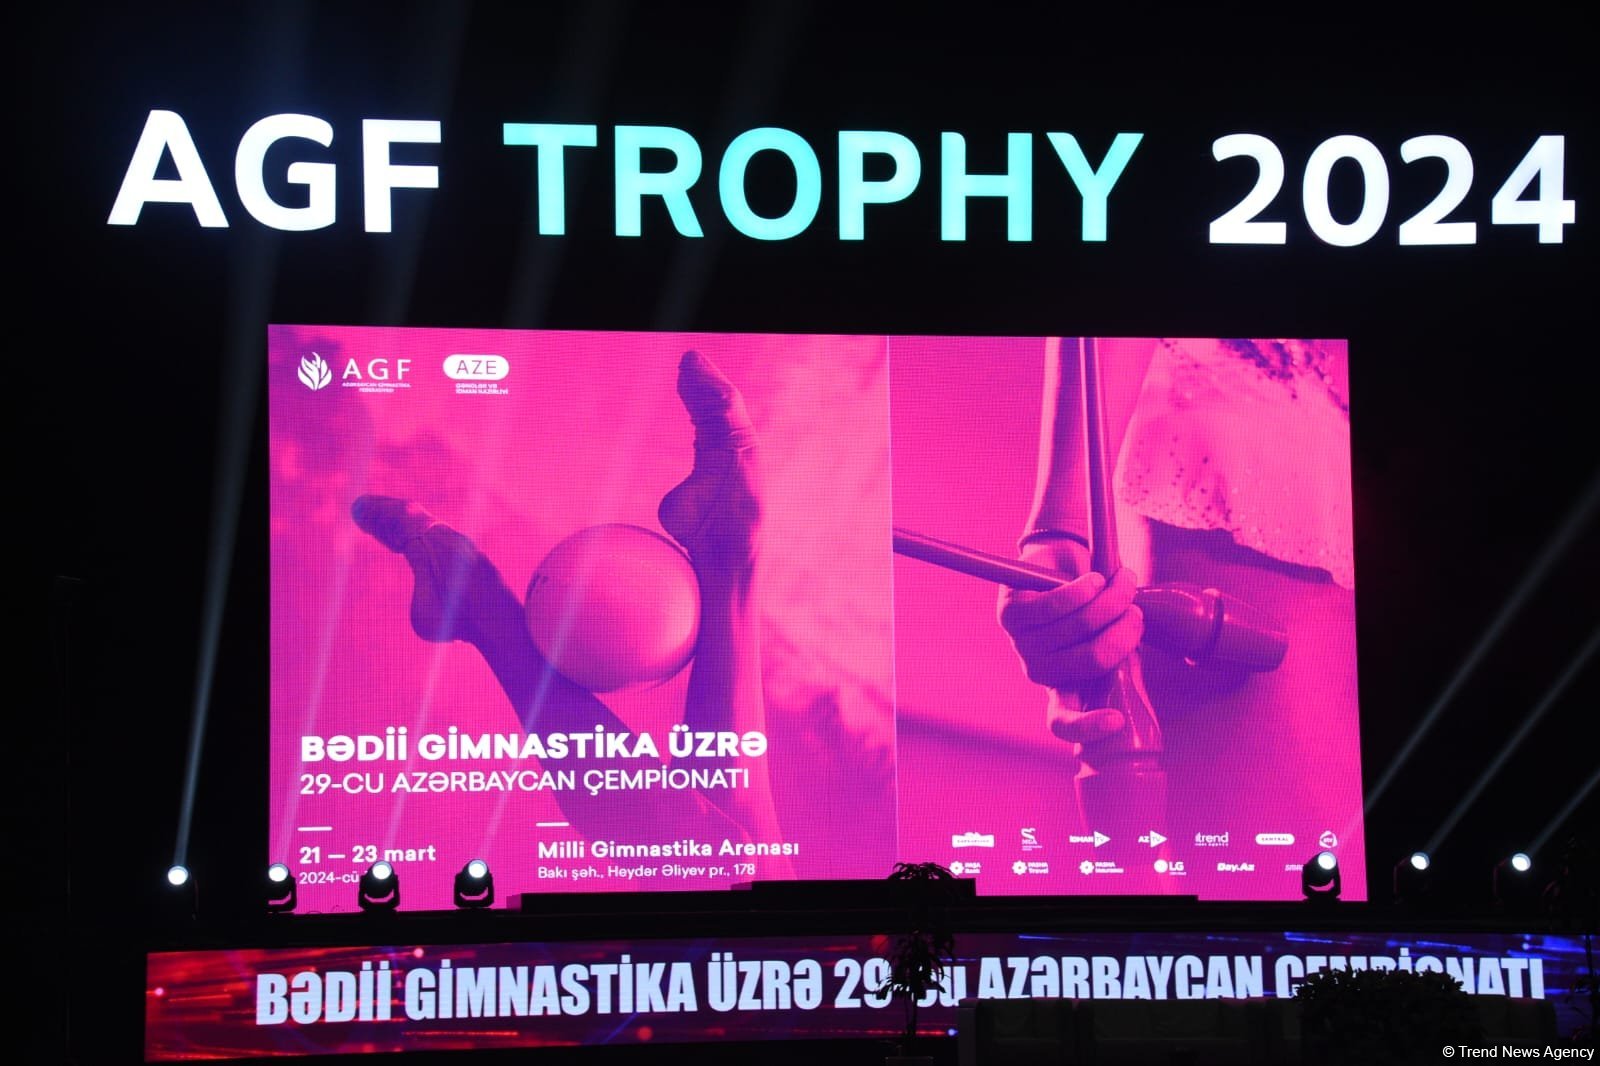 Определились победительницы 29-го чемпионата Азербайджана по художественной гимнастике  среди пре-юниорок